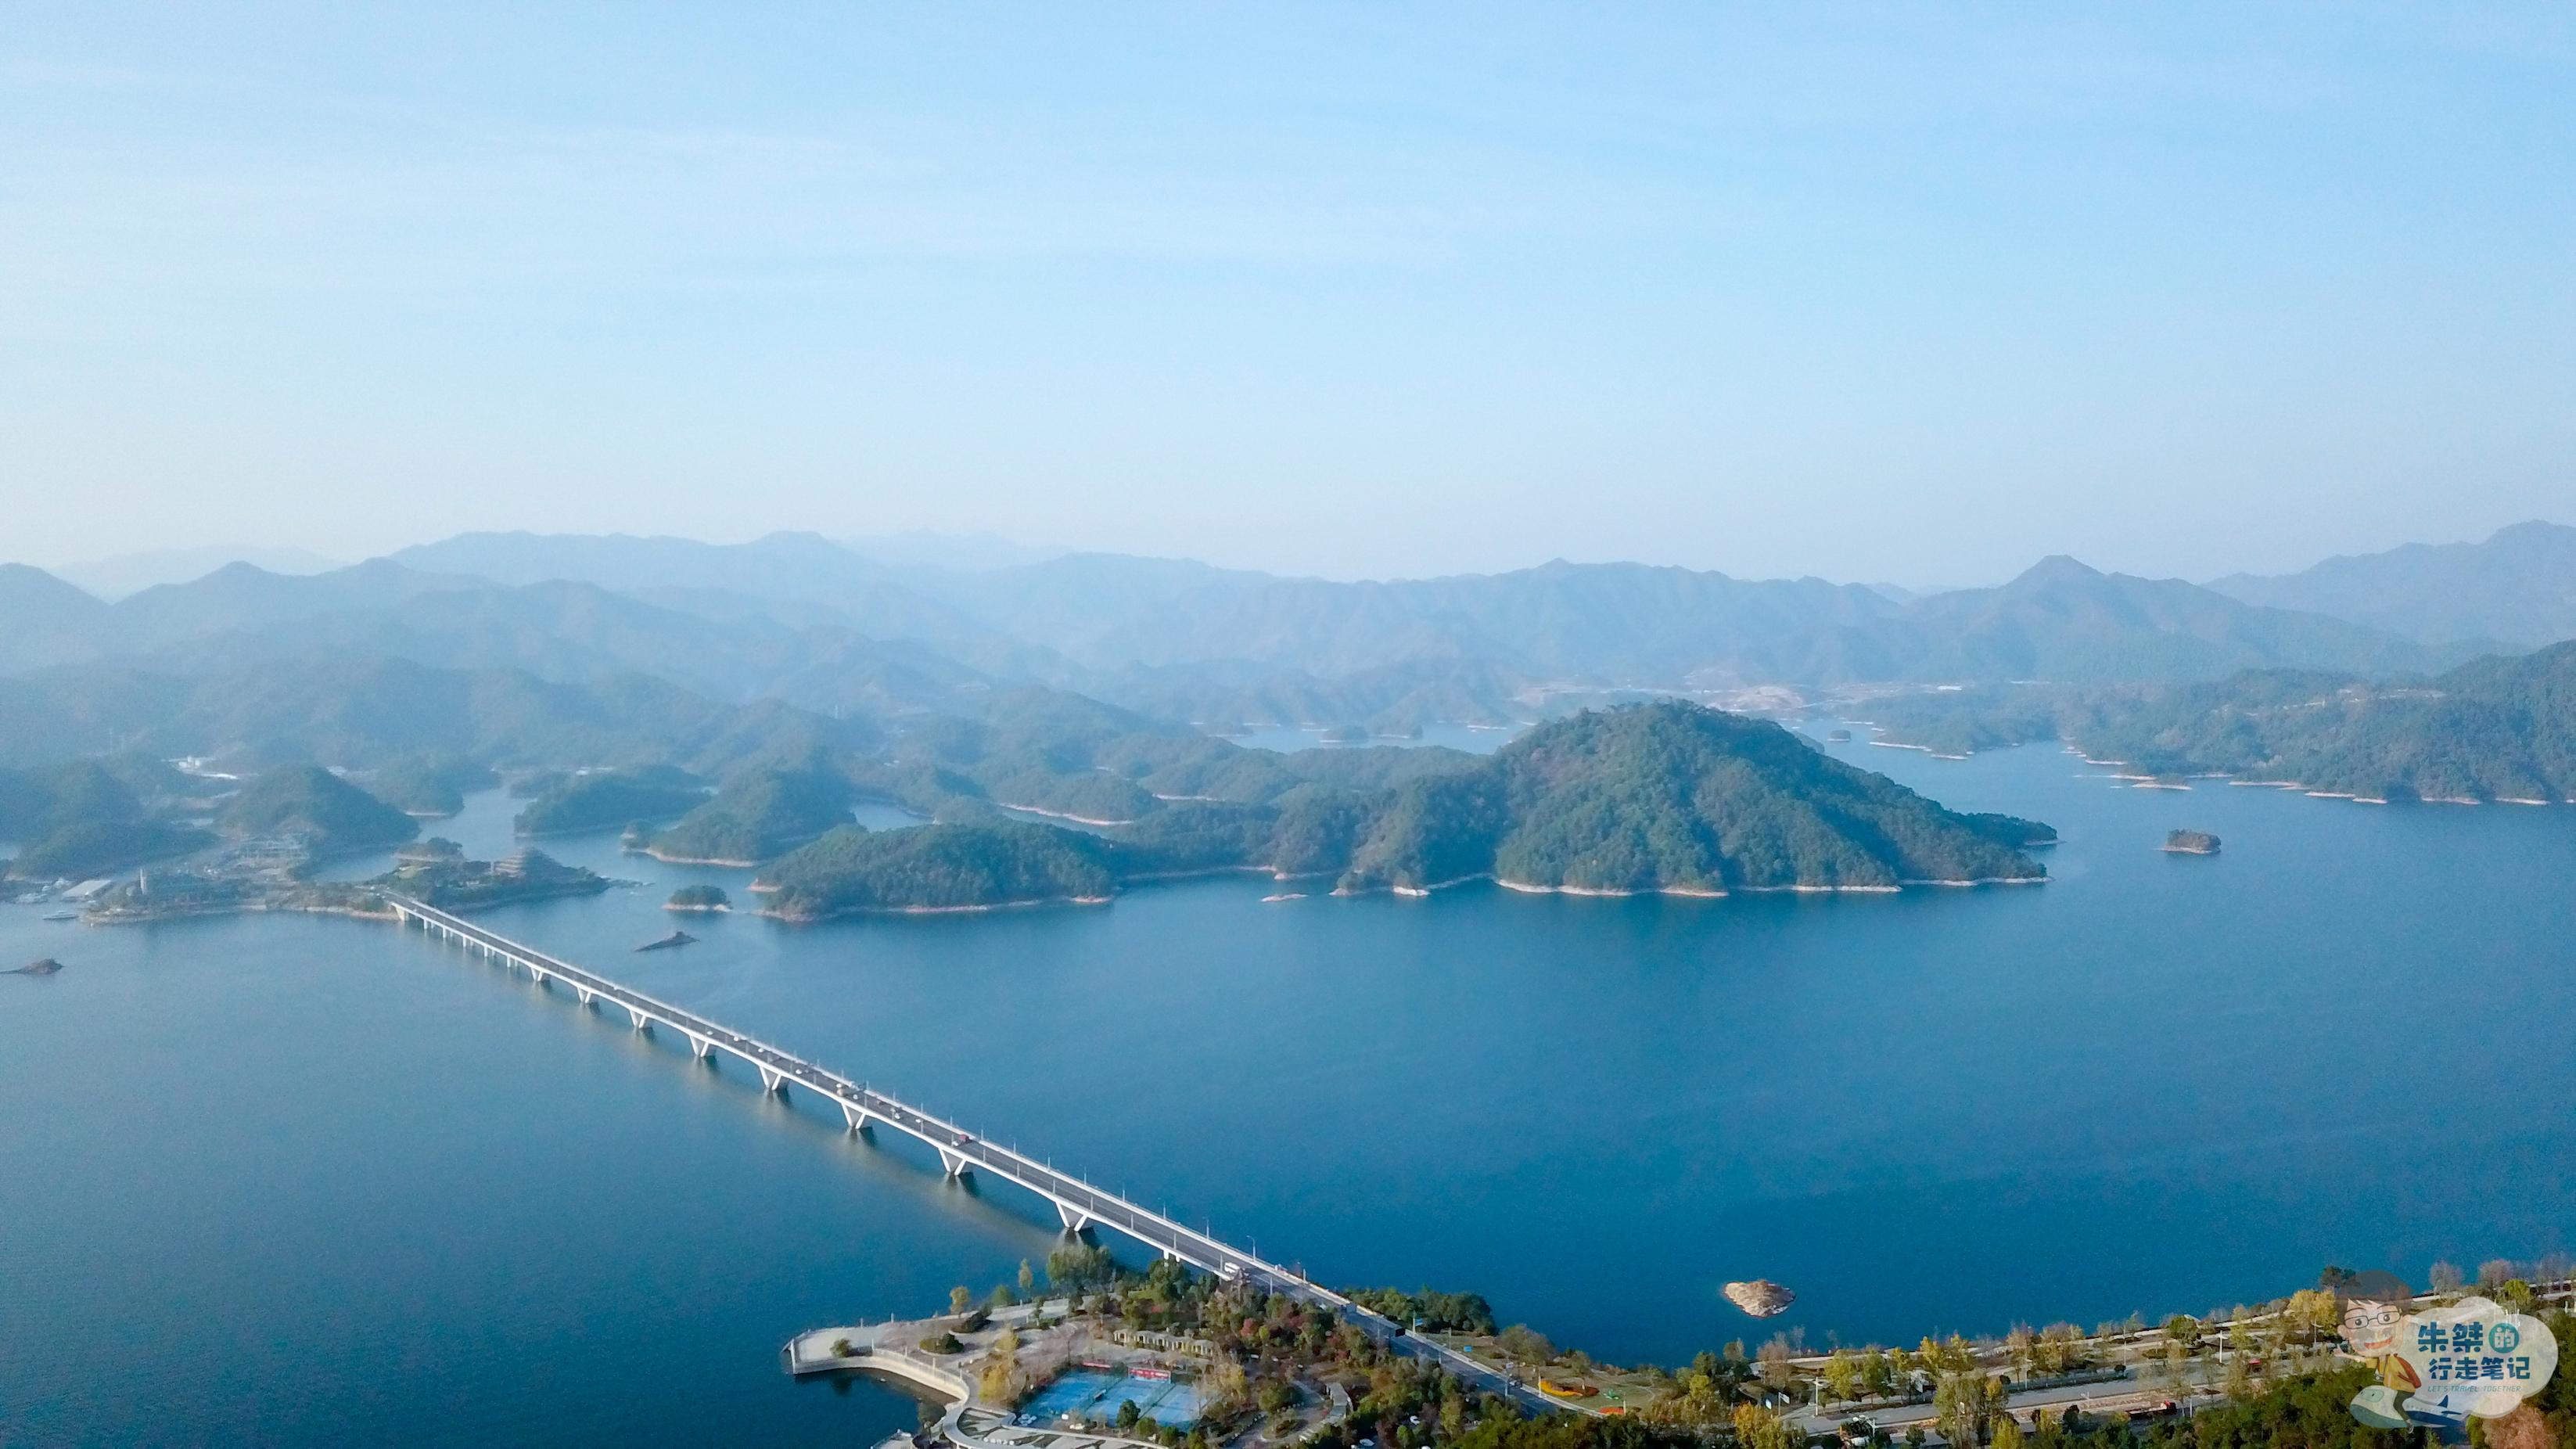 原创中国最大人工湖被誉为天下第一秀水因湖中有千座岛屿而得名